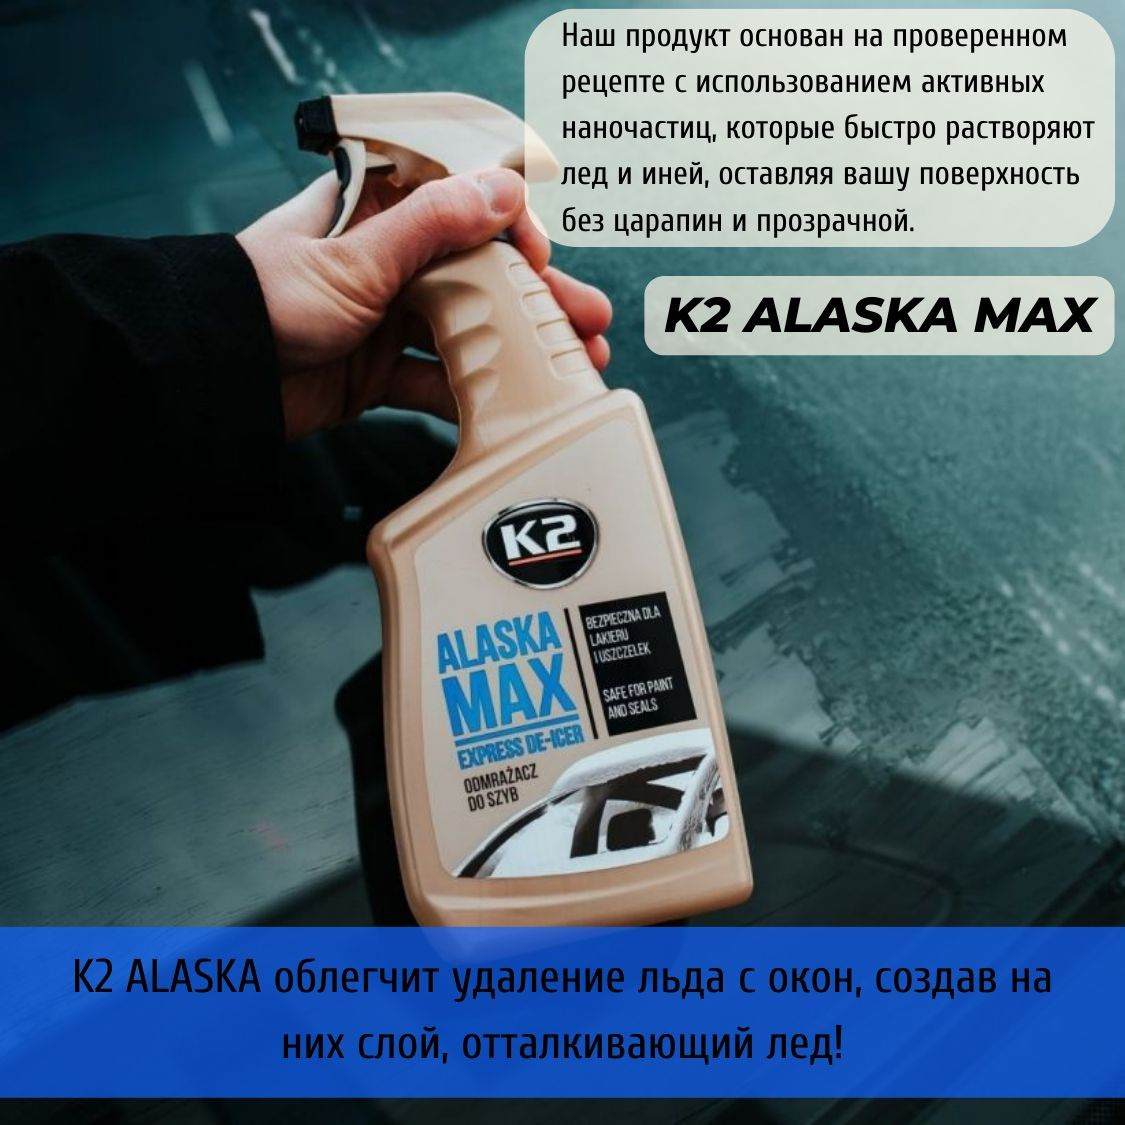 K2 ALASKA MAX облегчит удаление льда с окон, создав на них слой, отталкивающий лед! Размораживатель для стекол автомобиля основан на проверенном рецепте с использованием активных наночастиц, которые быстро растворяют лед и иней, оставляя поверхность автомобиля без царапин и прозрачной.